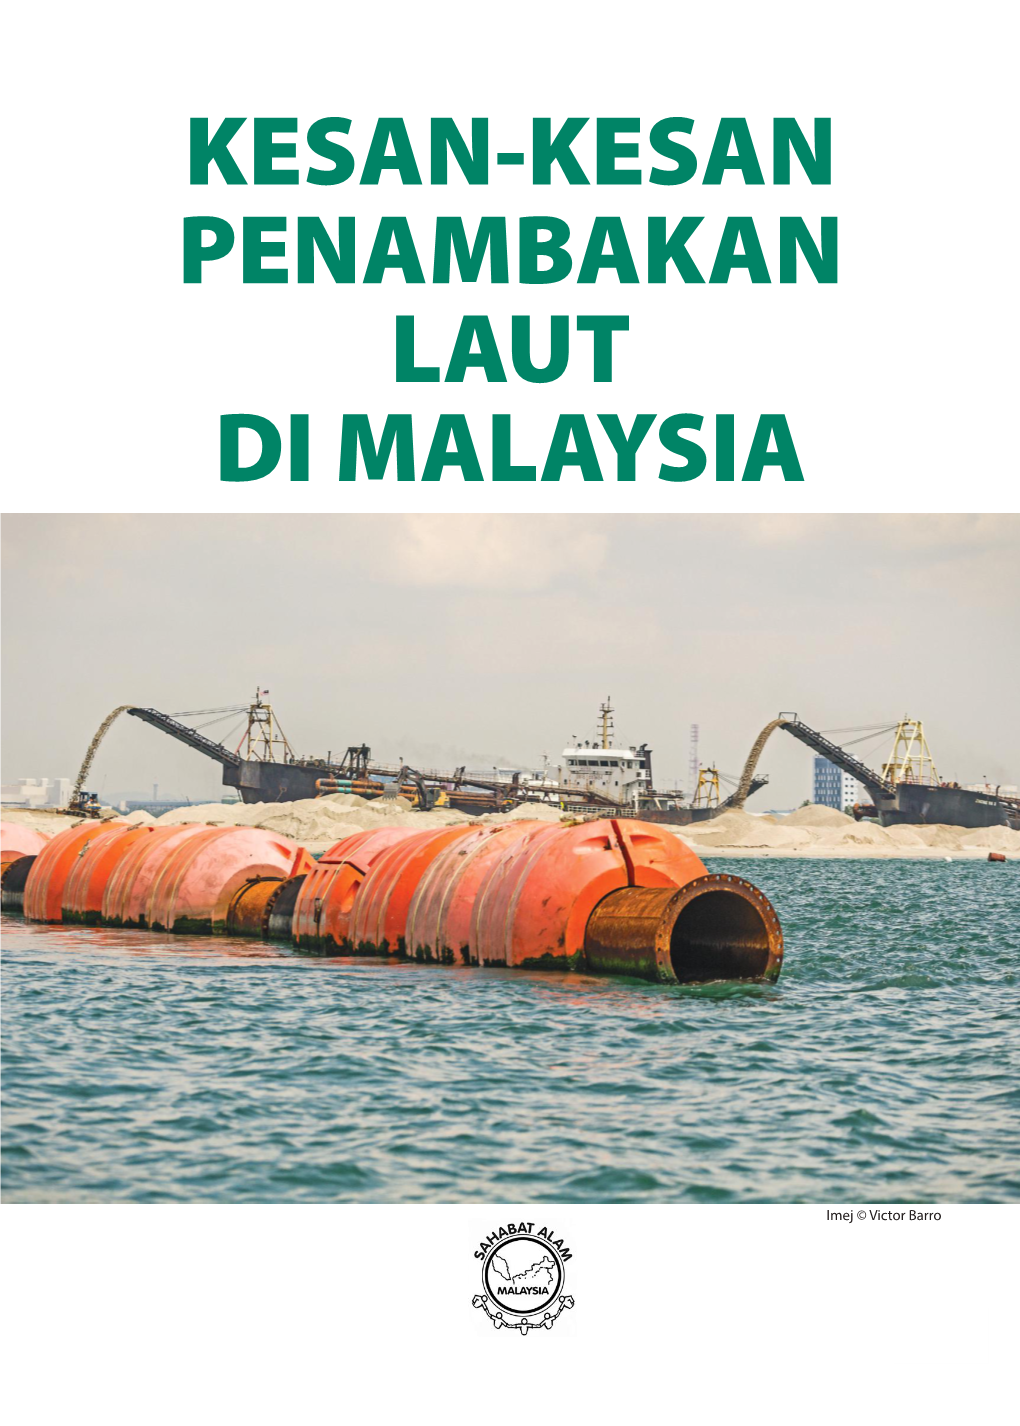 Kesan-Kesan Penambakan Laut Di Malaysia